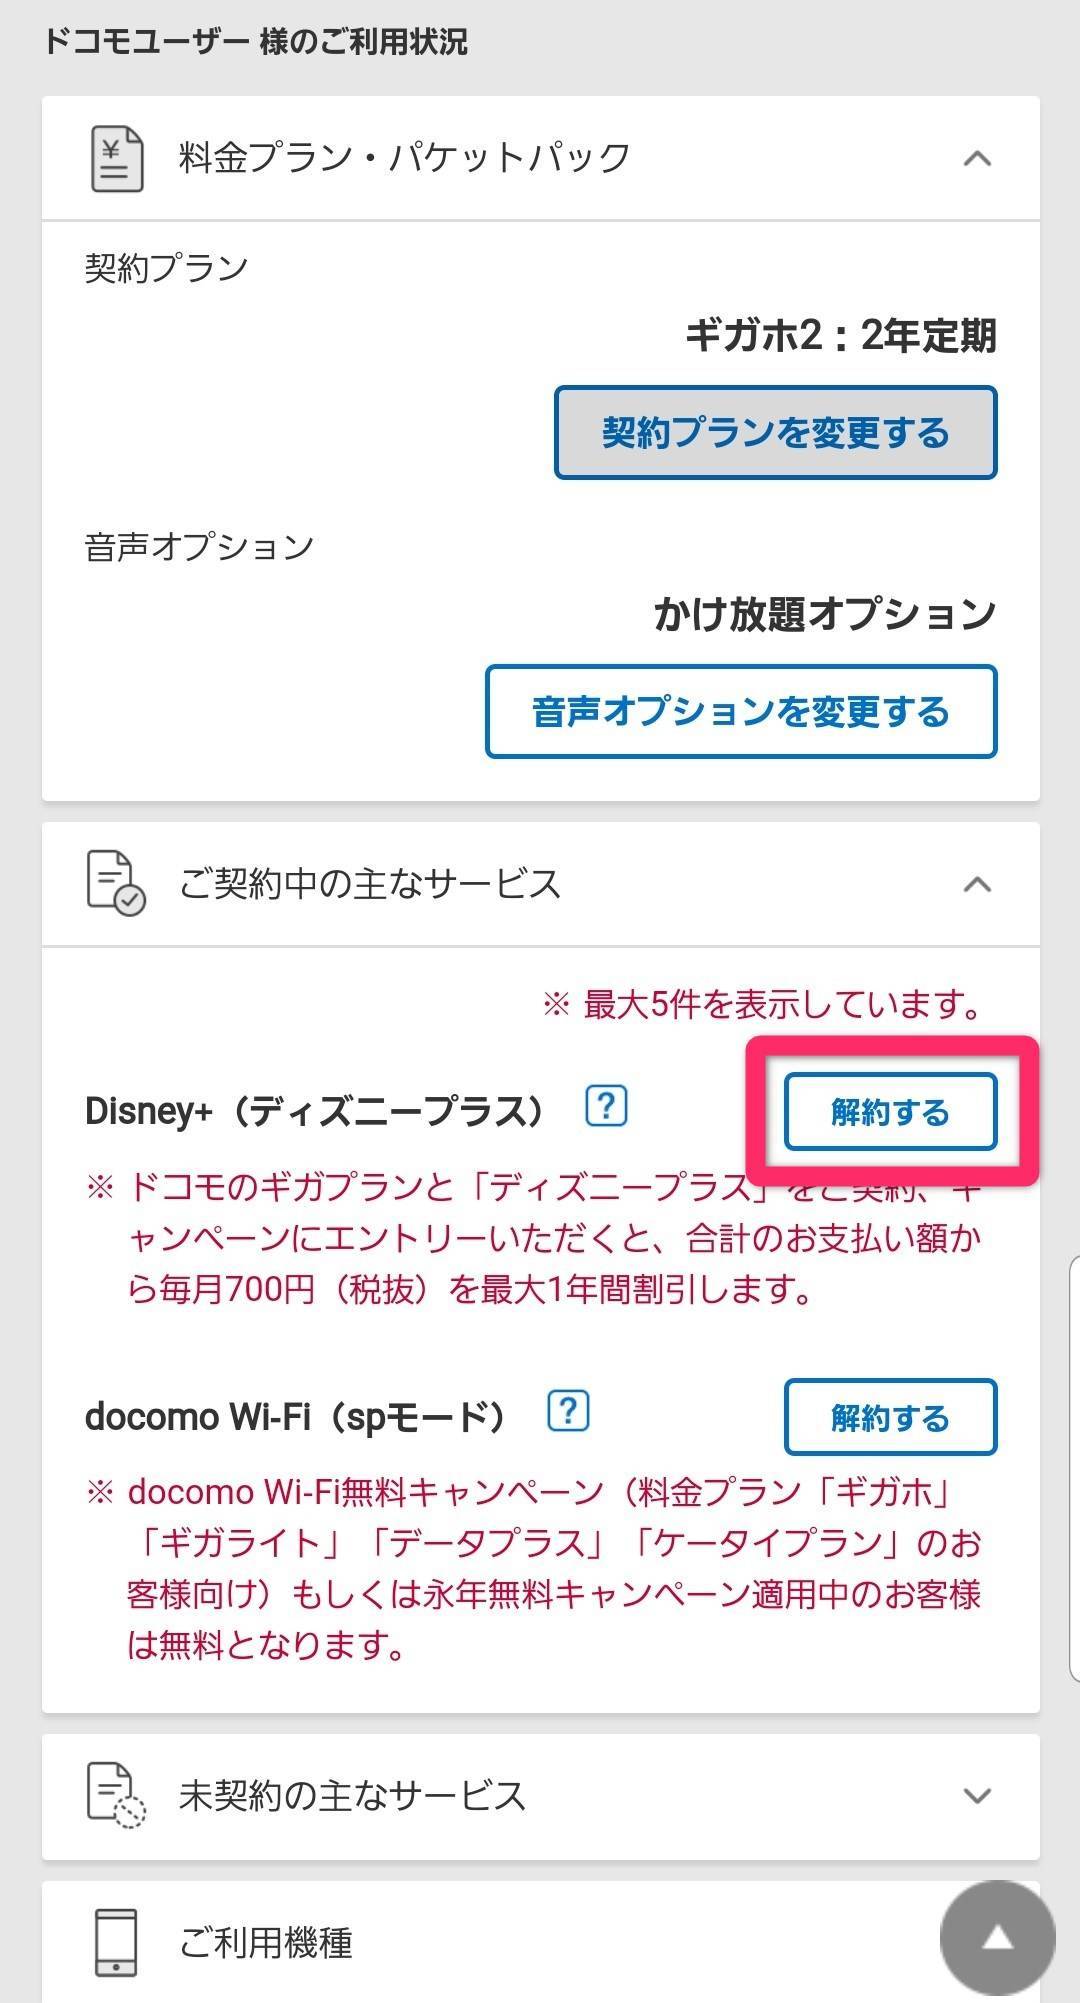 Disney ディズニープラス の解約 退会方法 アプリ削除だけではダメ Appliv Topics